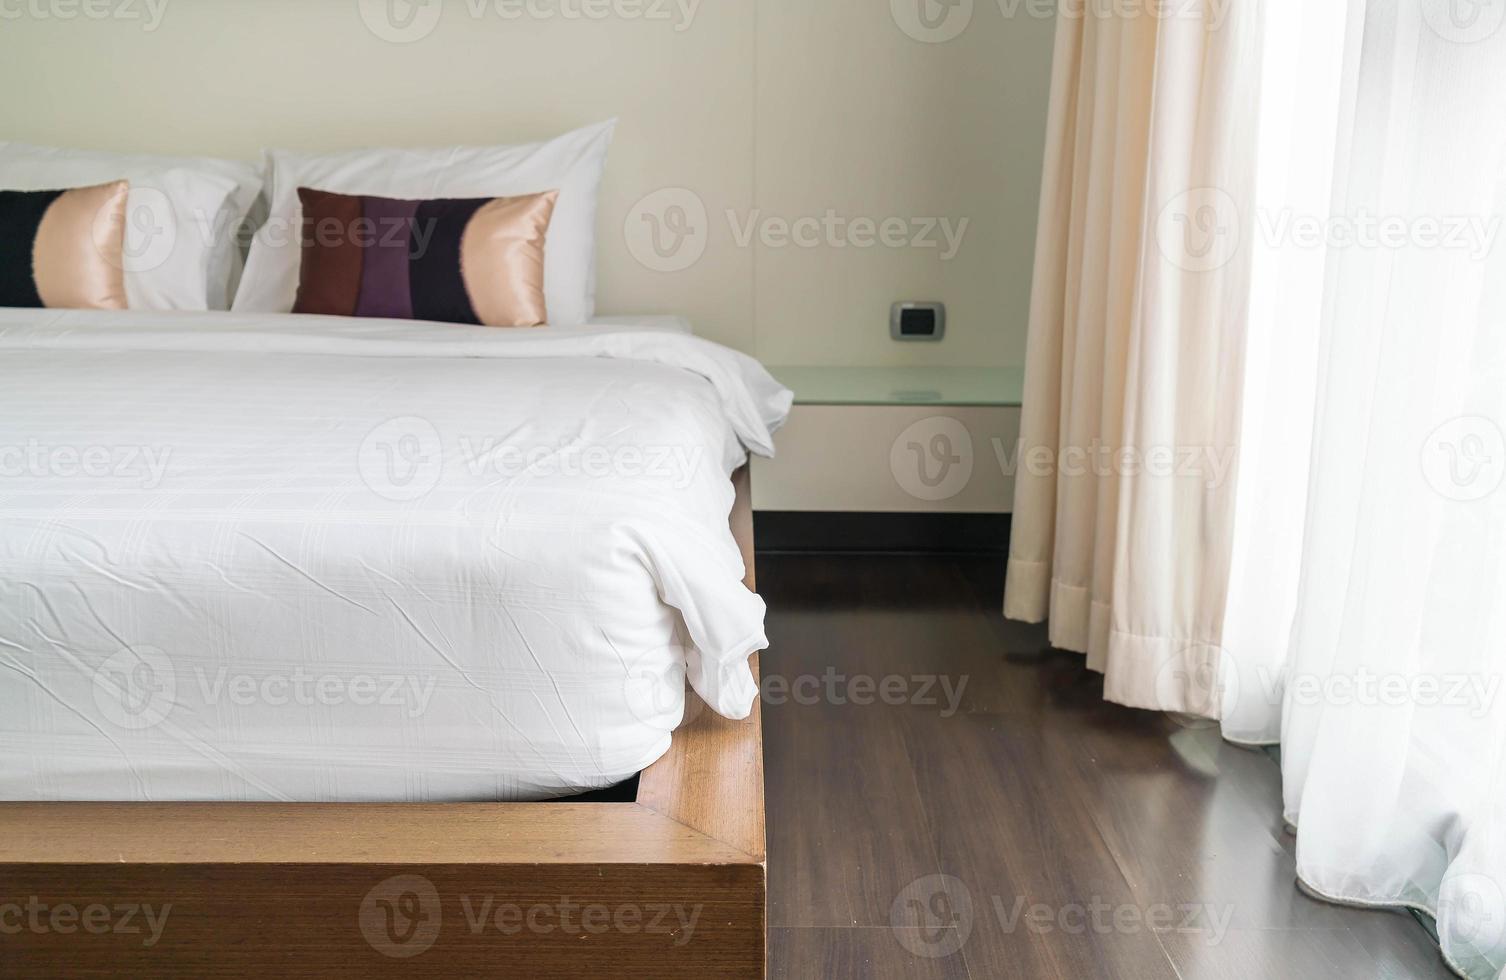 decoração de travesseiro na cama no interior do quarto foto